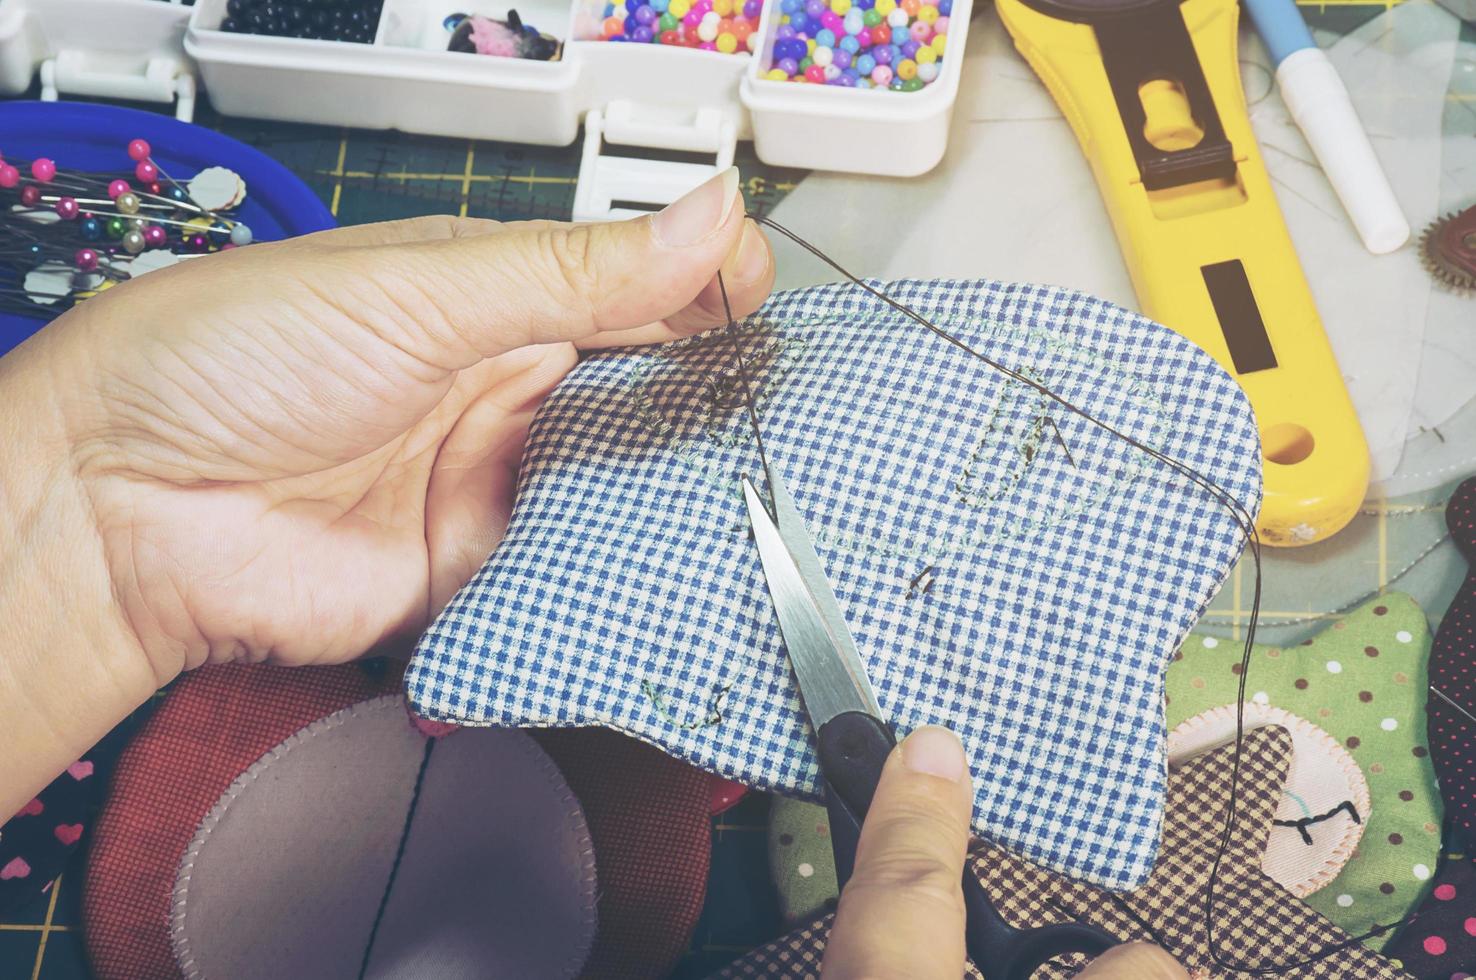 una mujer está haciendo costura con otro equipo de bordado en una mesa foto